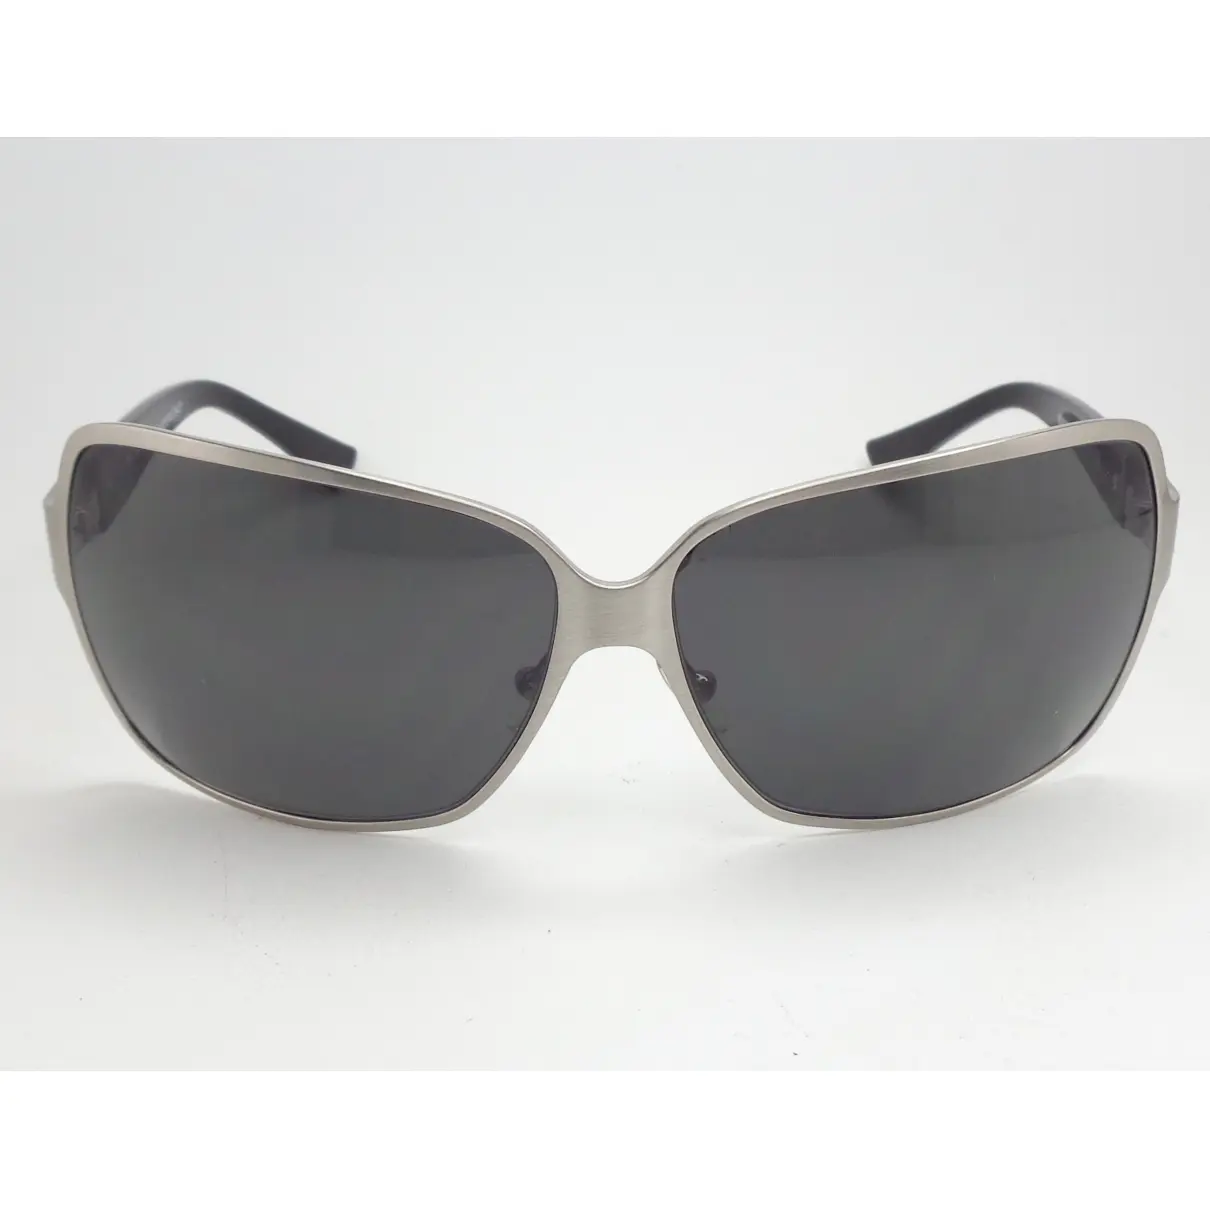 Sunglasses Missoni - Vintage